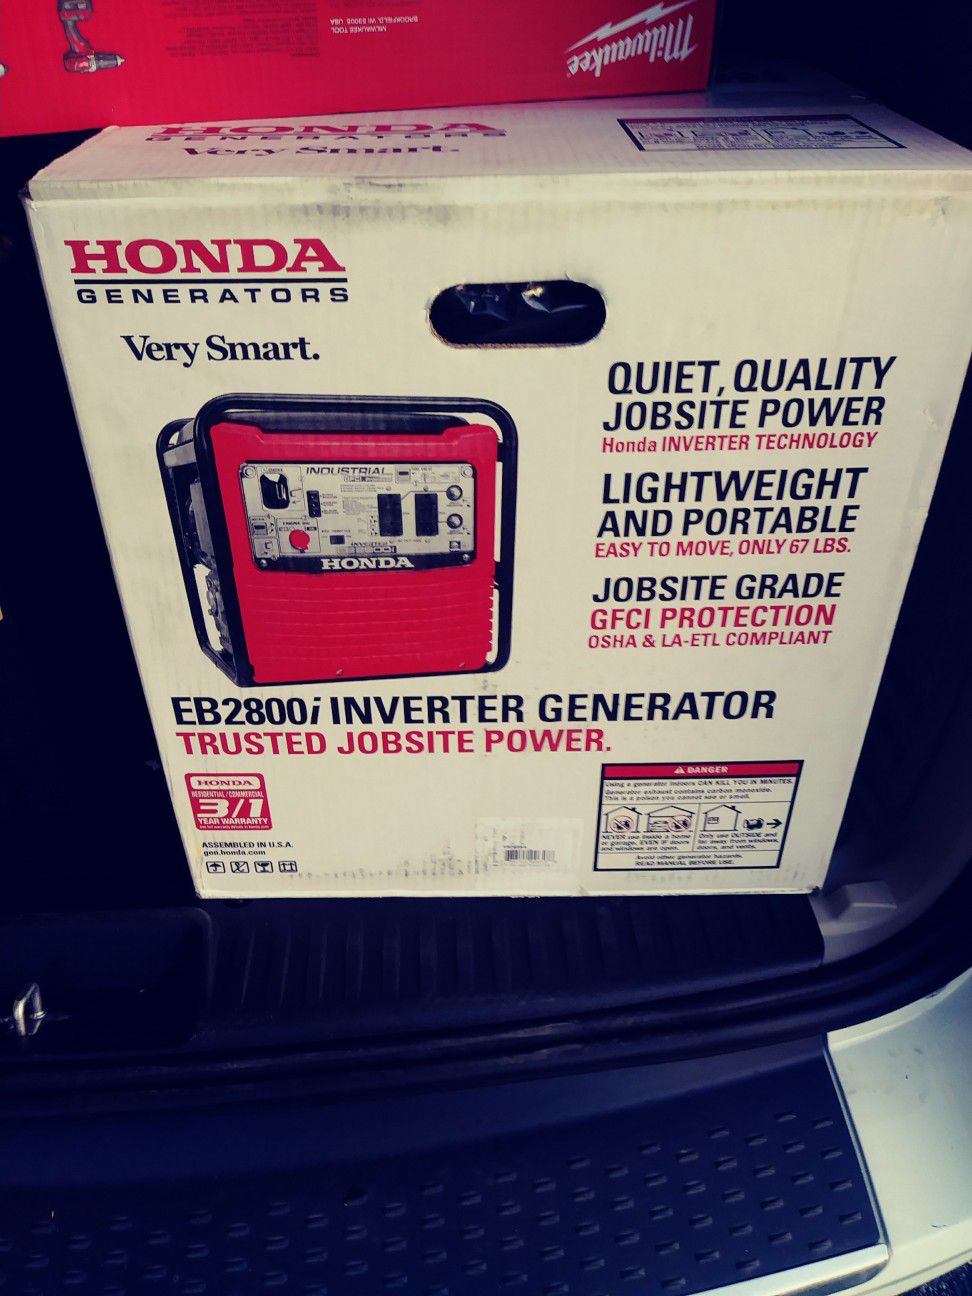 Brand new Honda generator